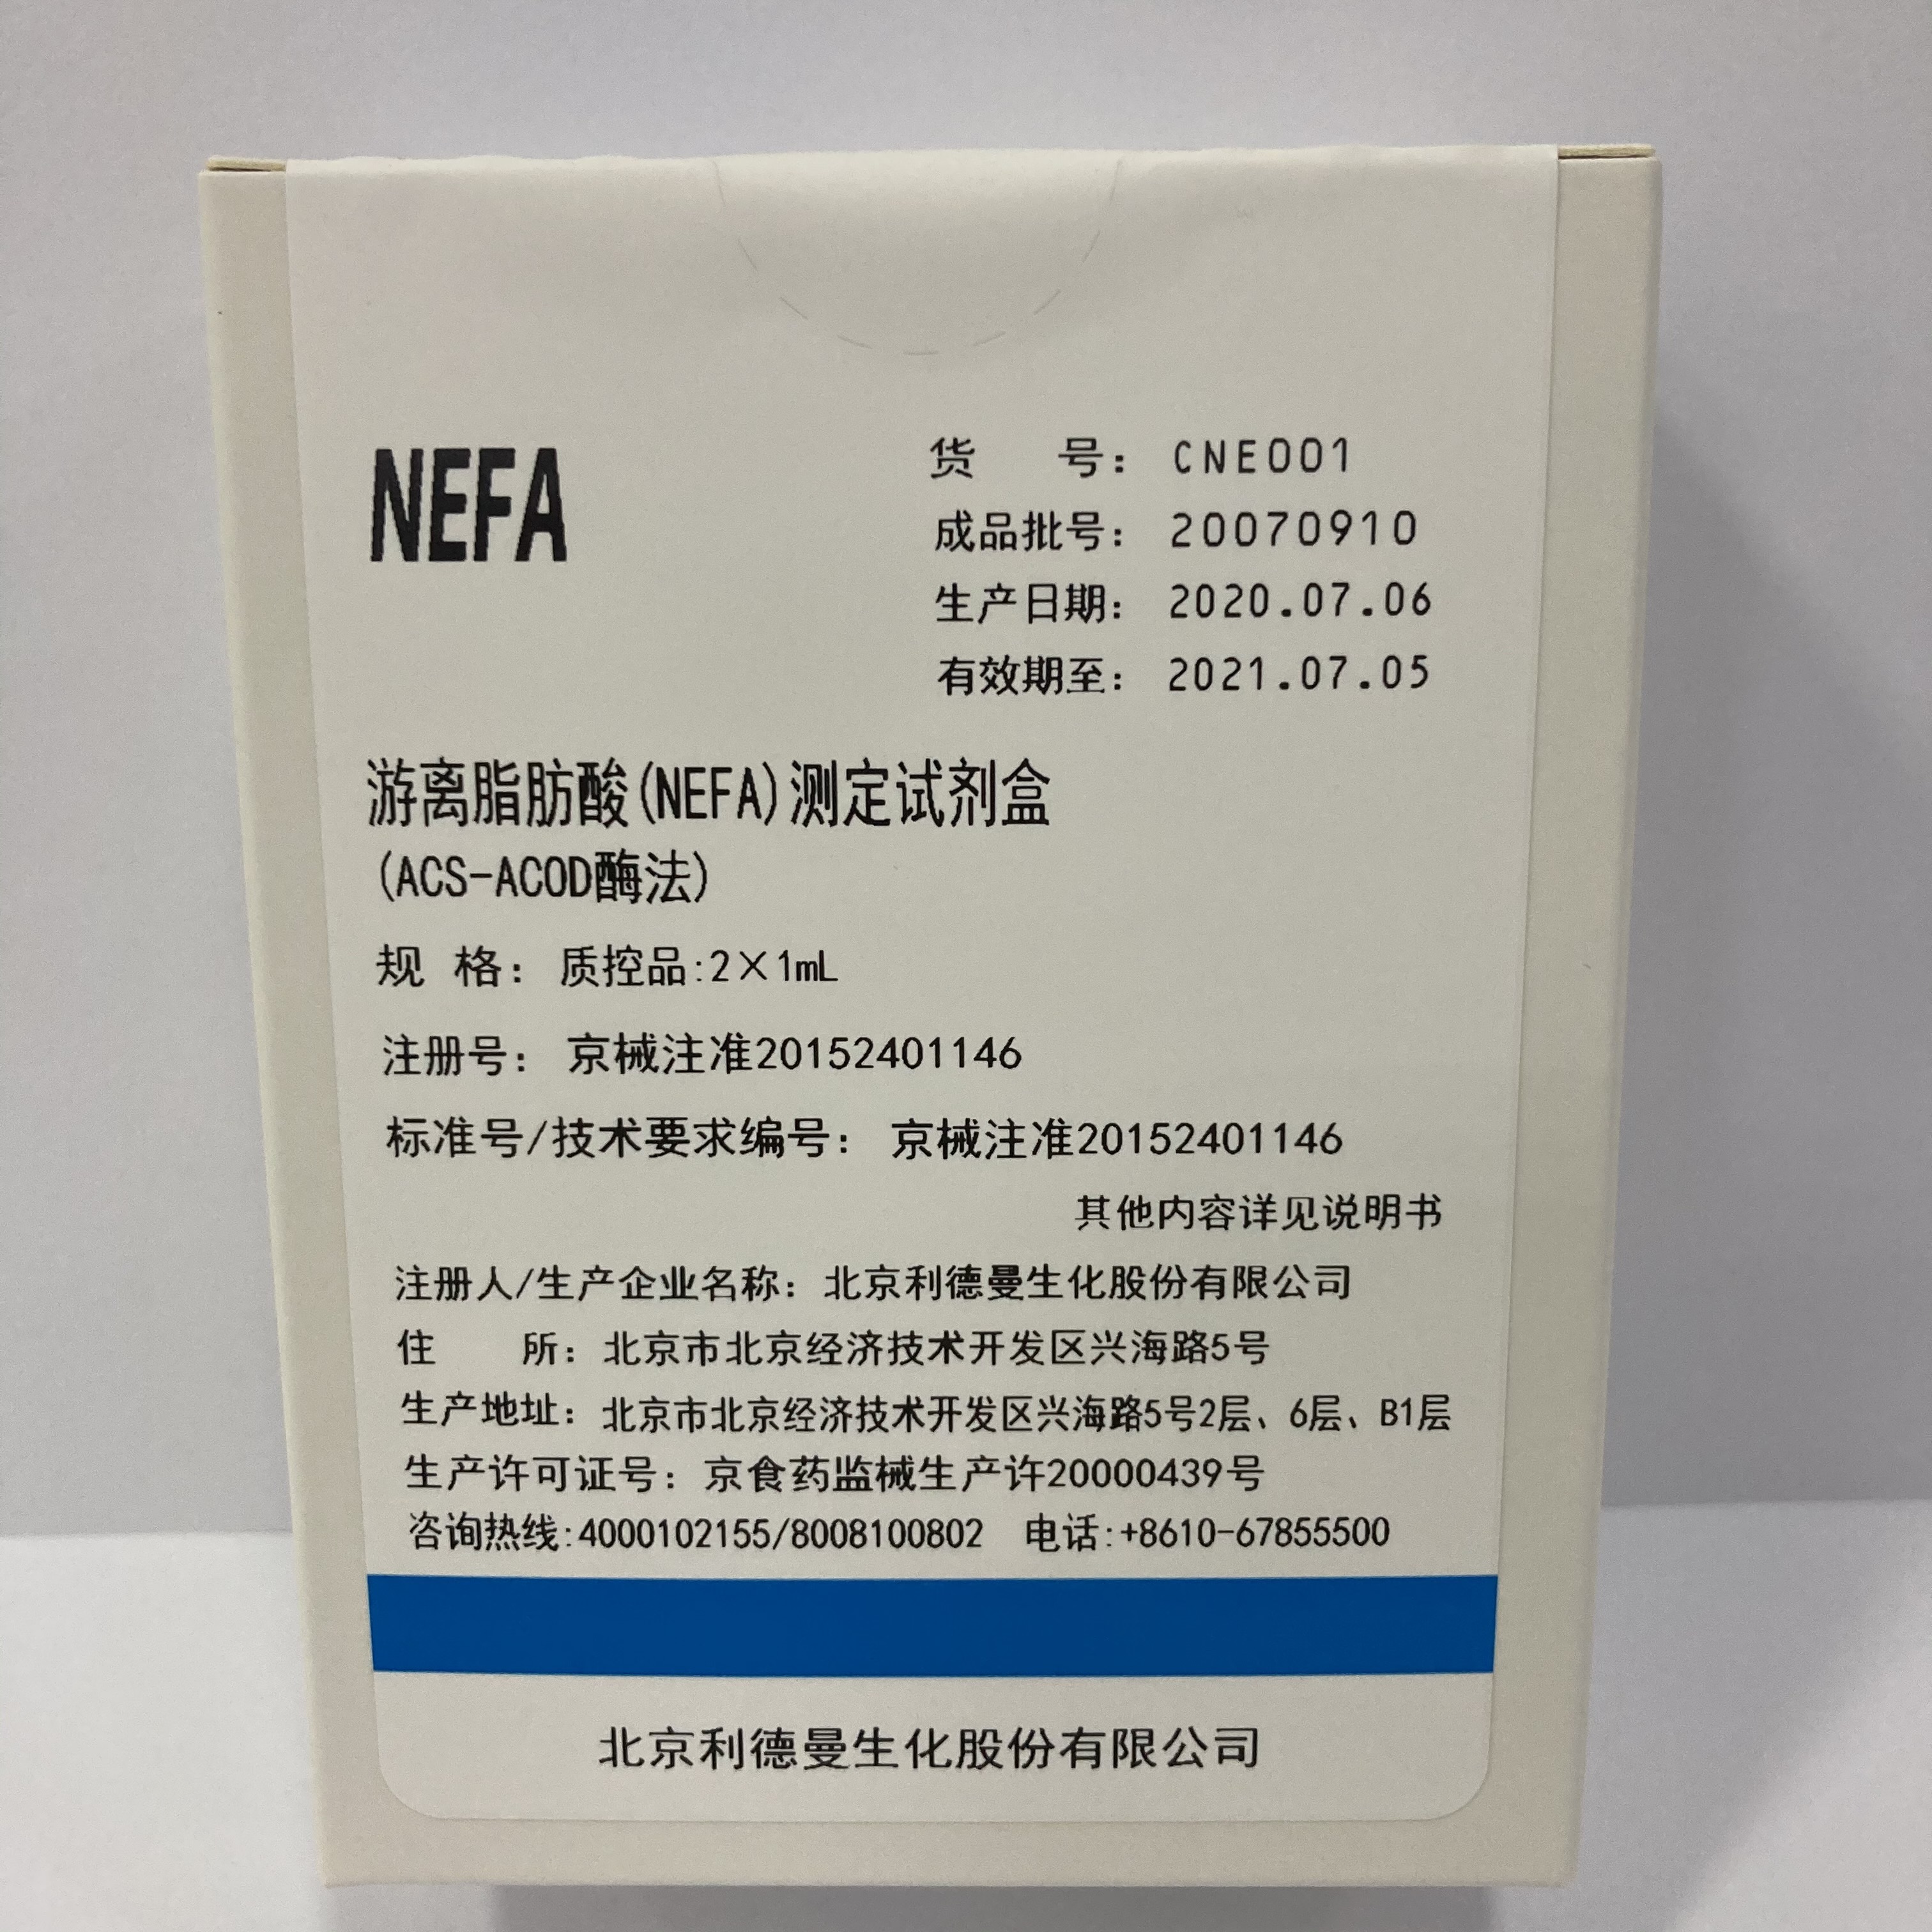 【利德曼】游离脂肪酸（NEFA）测定试剂盒(ACS-ACOD酶法) 【质控品】